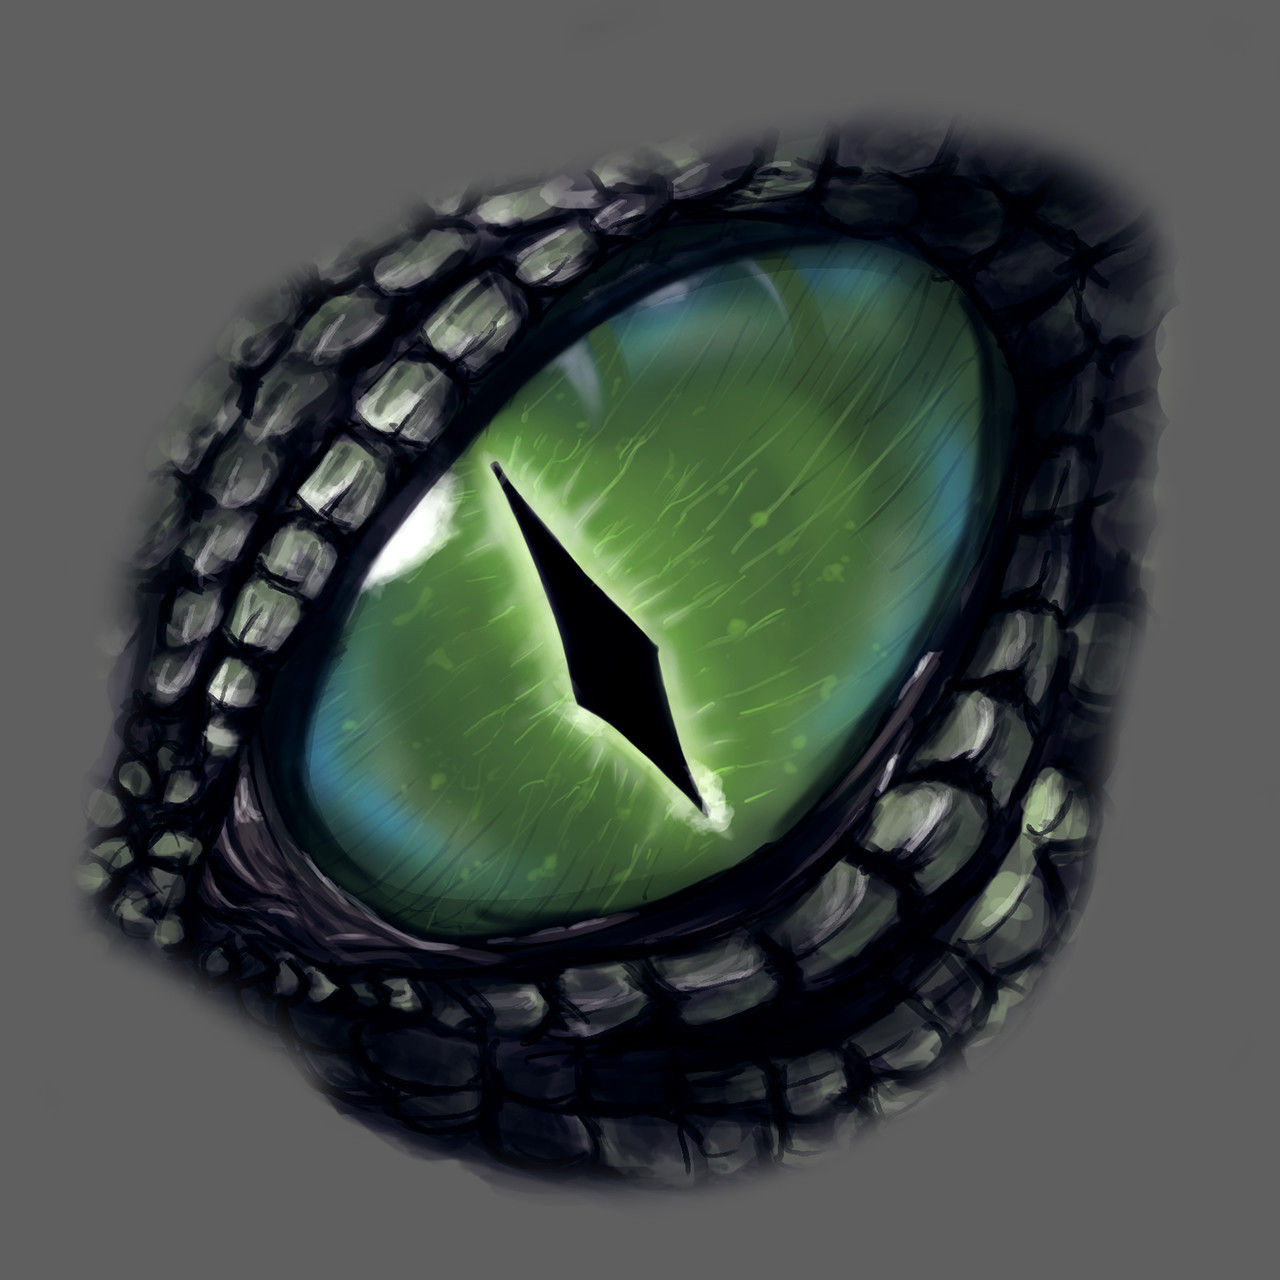 ArtStation - Dragon eyes